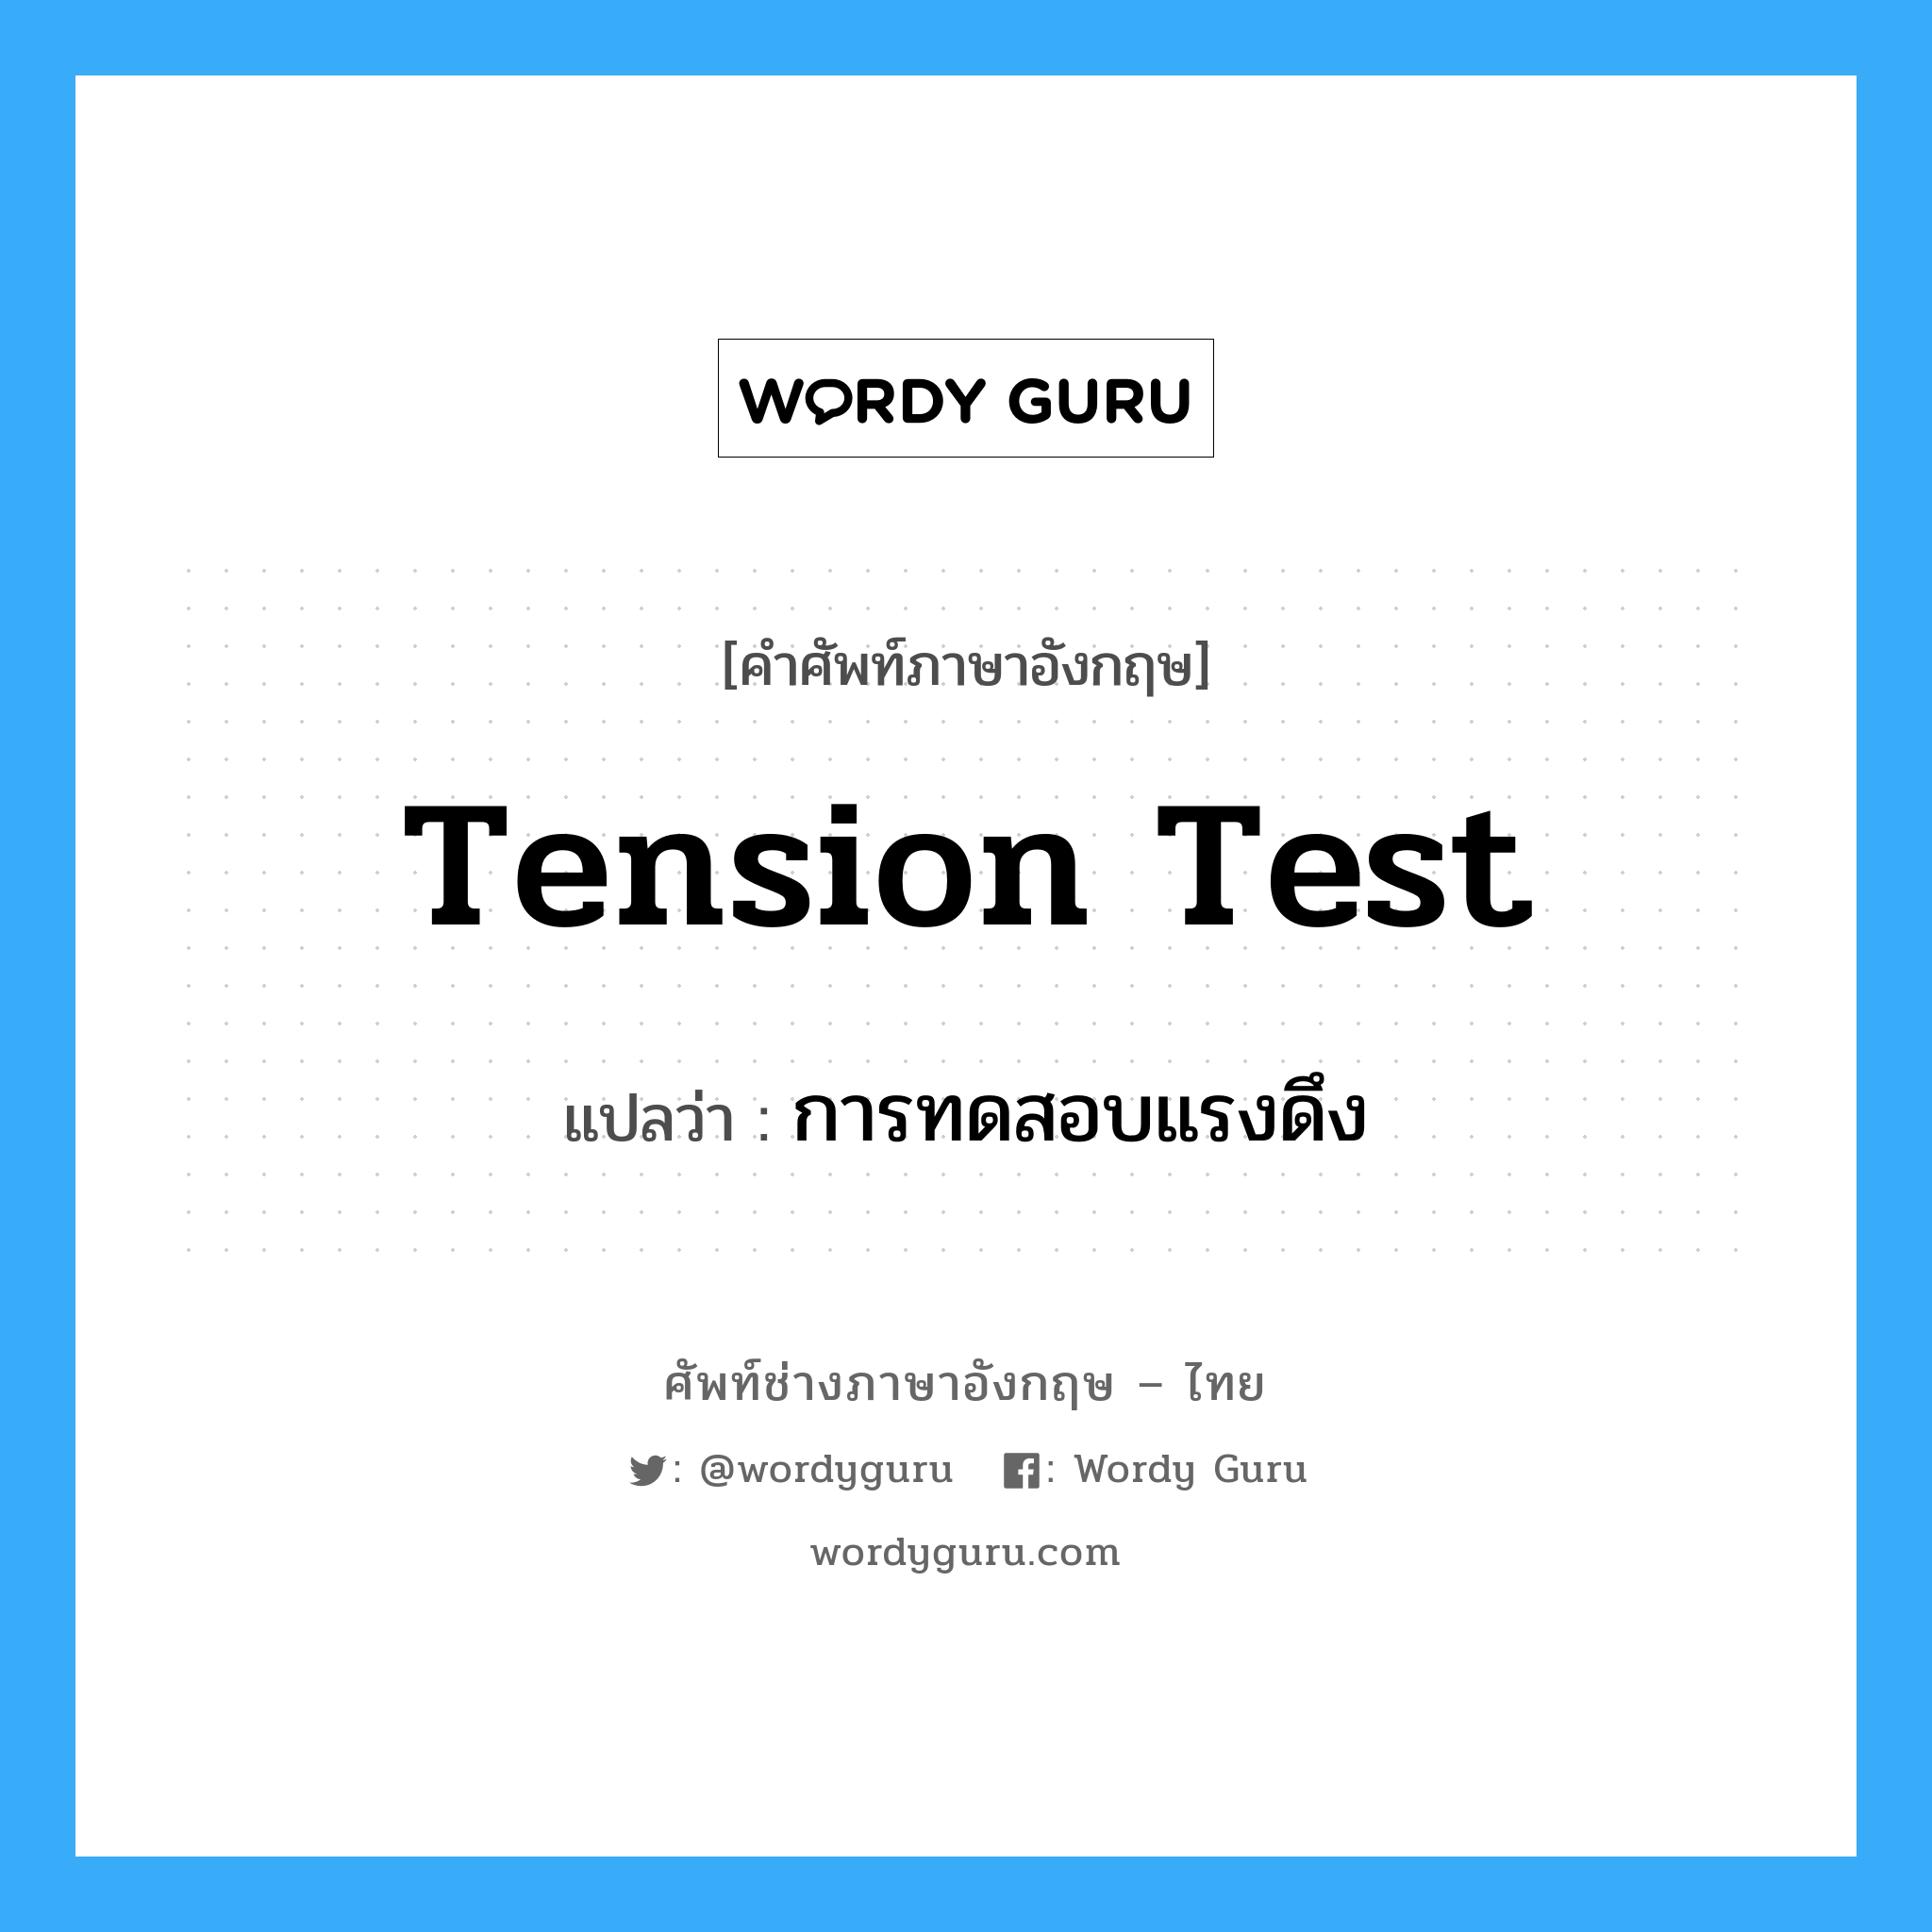 การทดสอบแรงดึง ภาษาอังกฤษ?, คำศัพท์ช่างภาษาอังกฤษ - ไทย การทดสอบแรงดึง คำศัพท์ภาษาอังกฤษ การทดสอบแรงดึง แปลว่า tension test